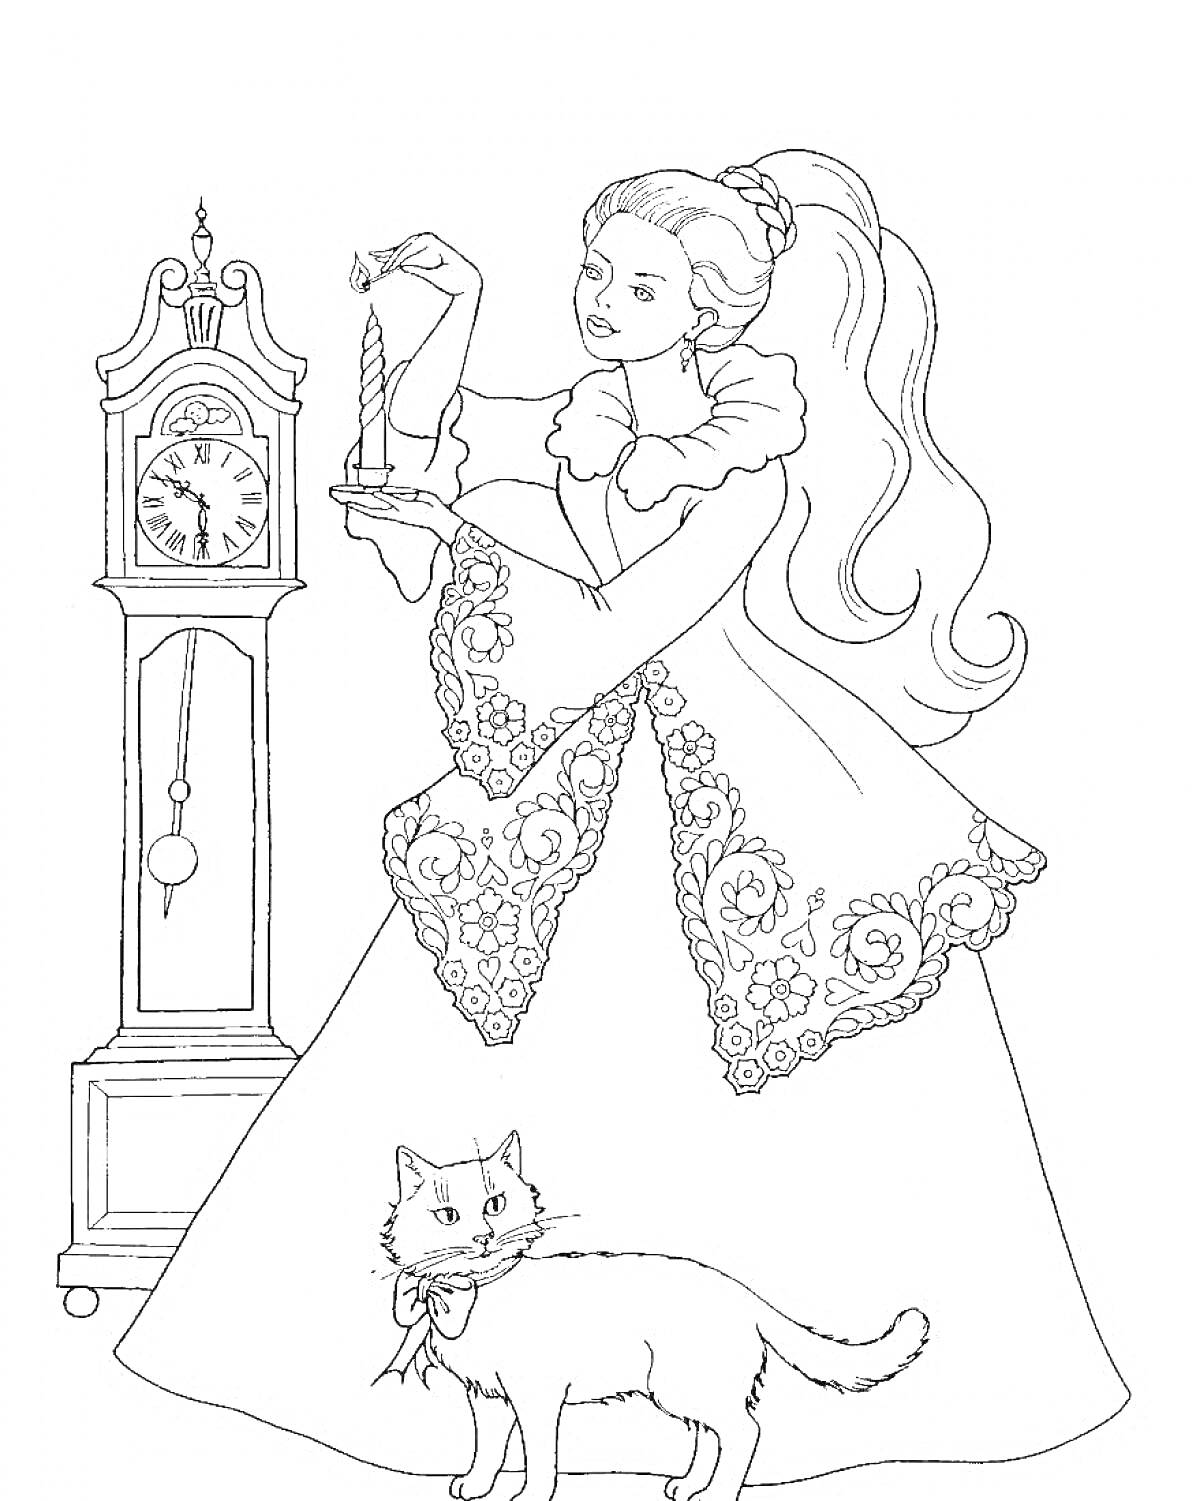 Принцесса с подсвечником, напольными часами и кошкой